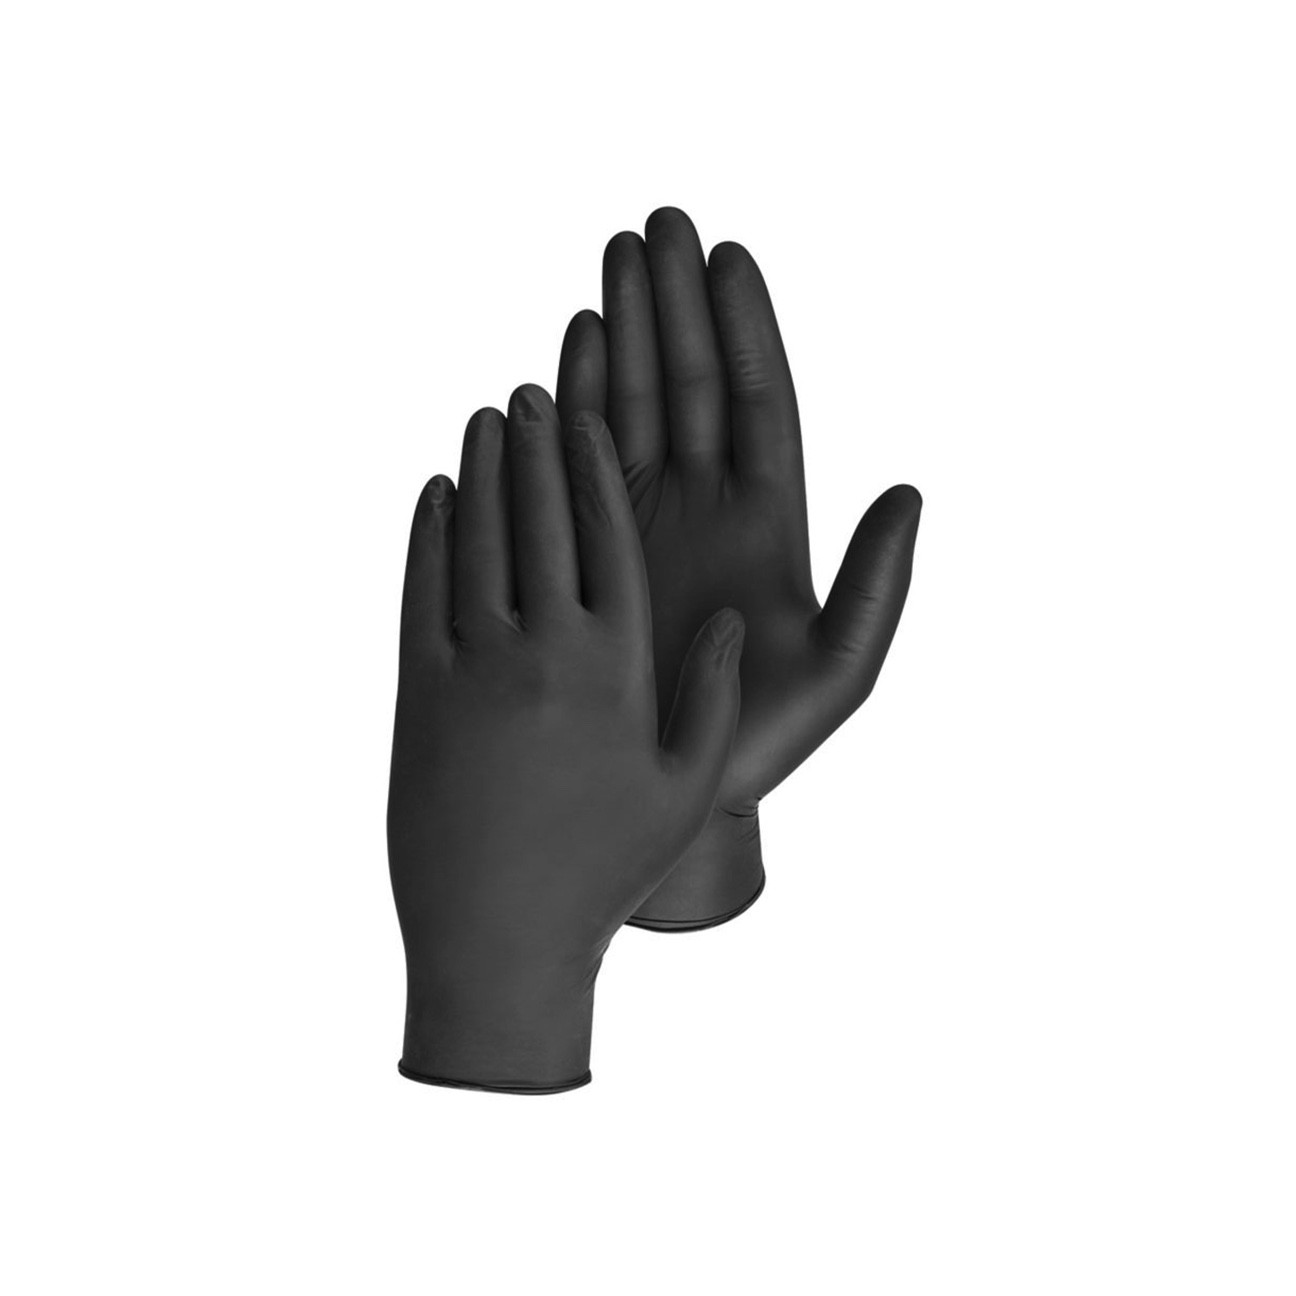 Nitrile Gloves - Size Large